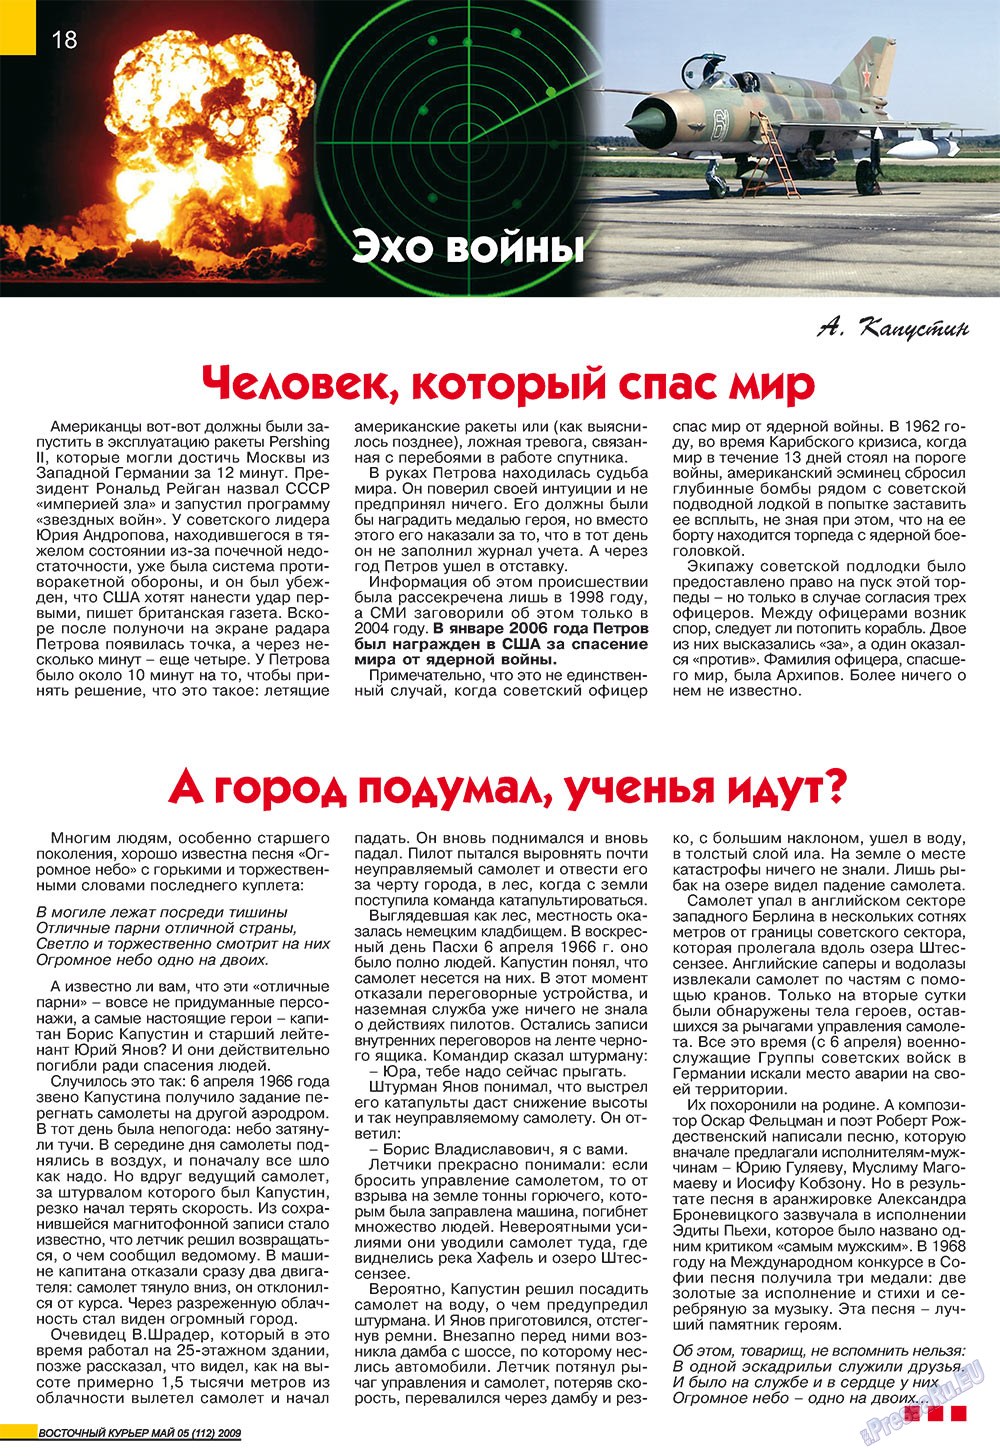 Восточный курьер (журнал). 2009 год, номер 5, стр. 18